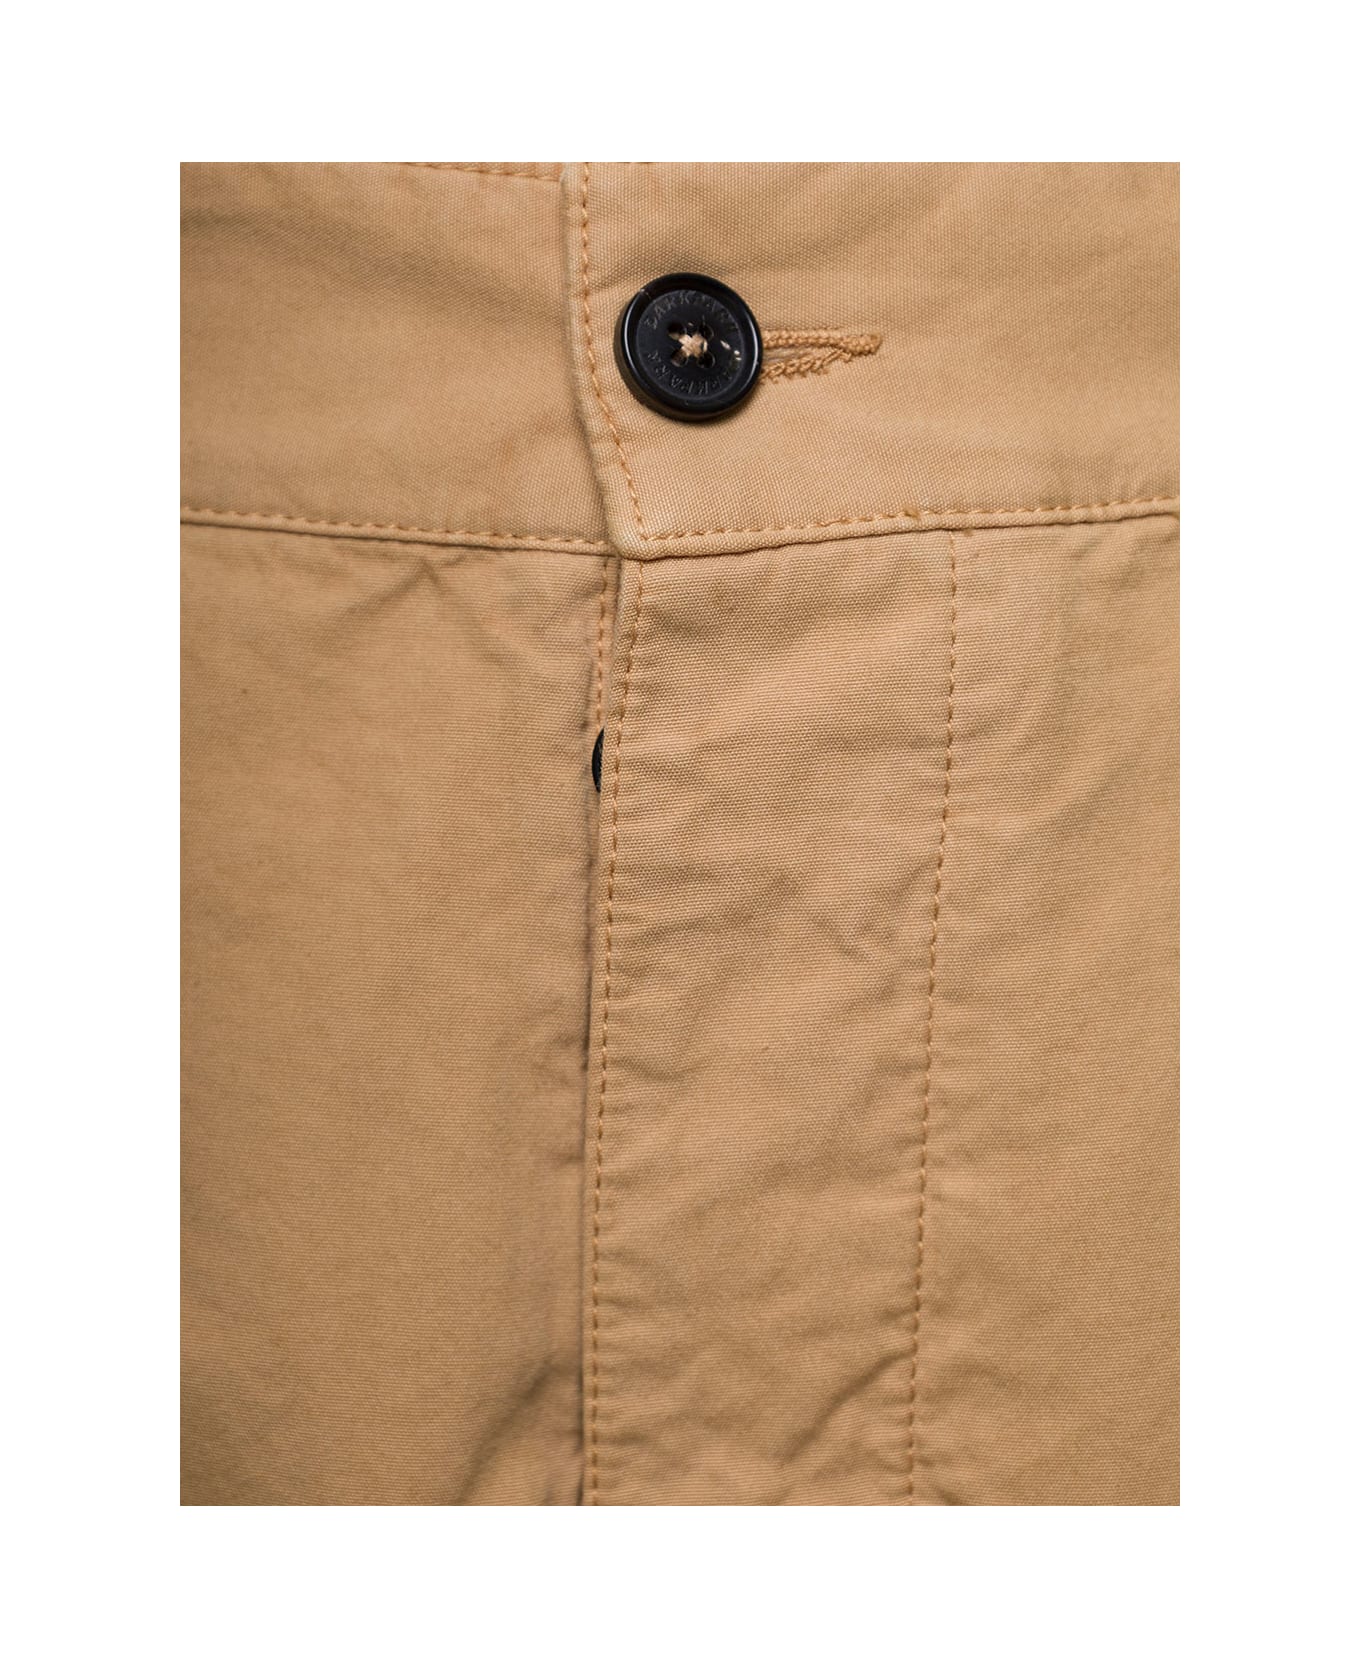 DARKPARK 'saint' Beige Cargo Pants With Pockets In Cotton Man - Beige ボトムス